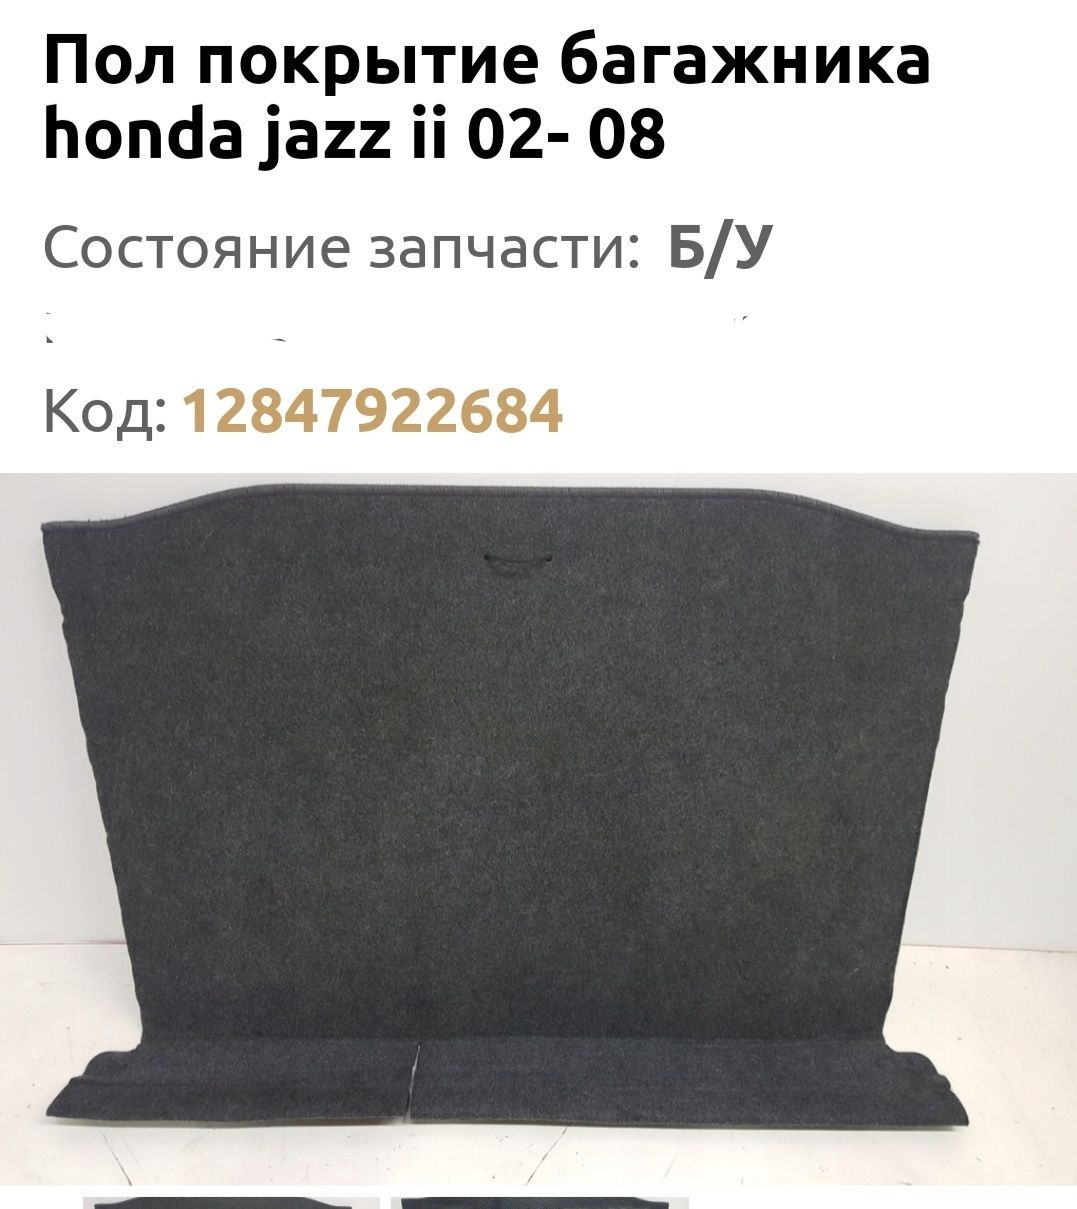 Продам пол багажника, Хонда джаз 2002г.